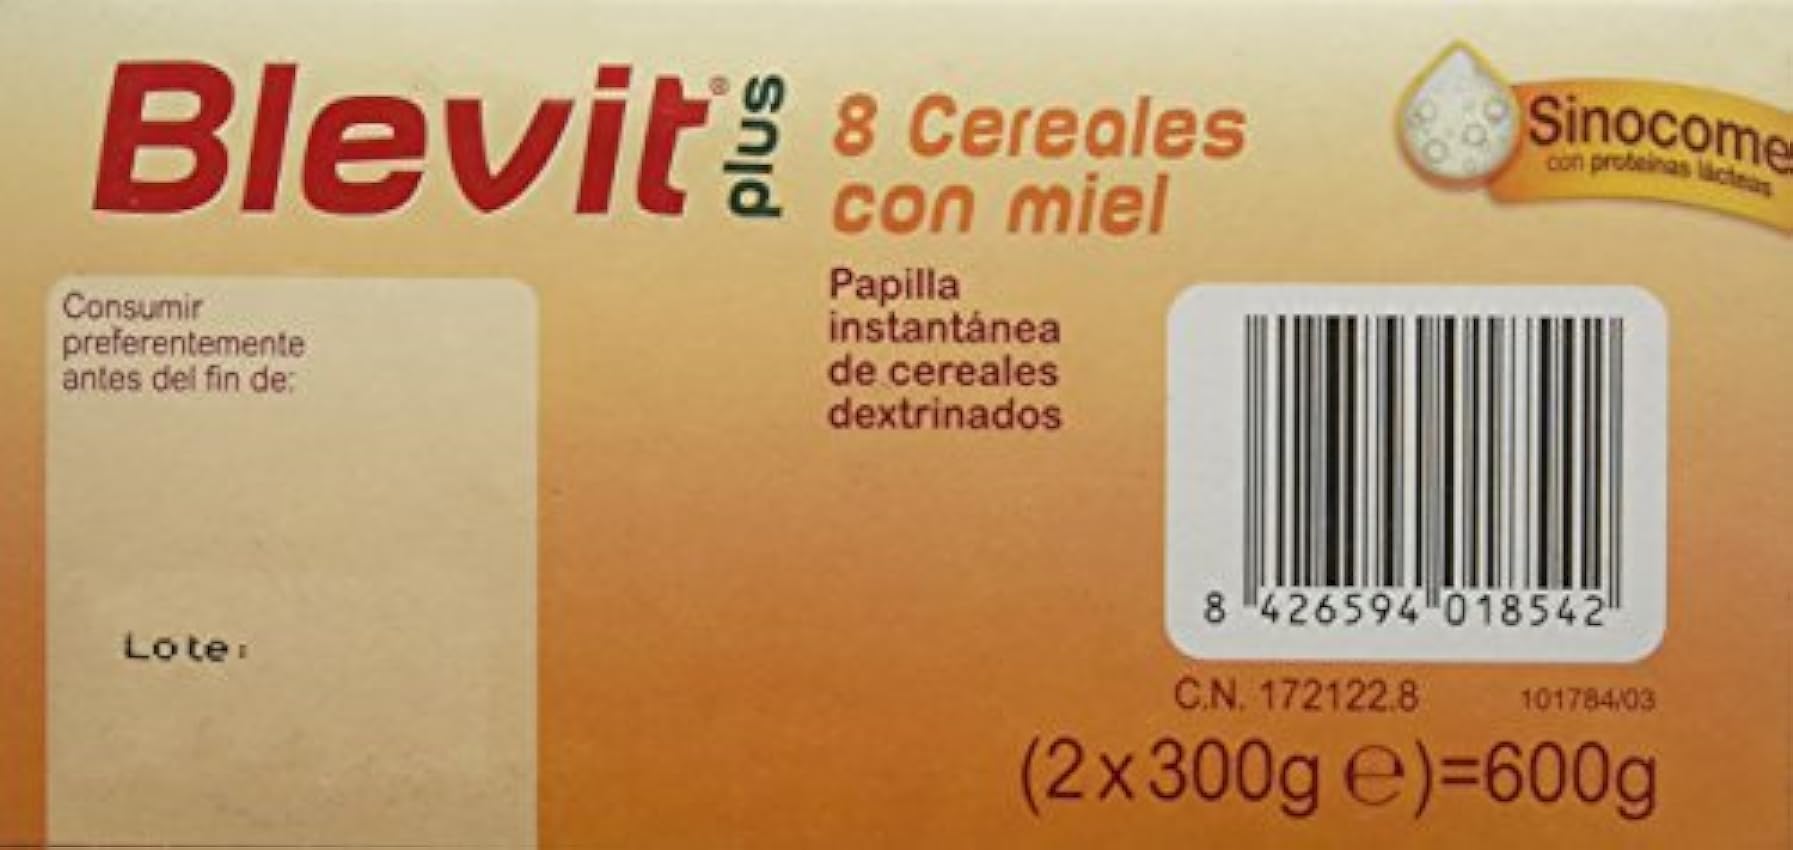 Blevit Plus Sinocome 8 Cereales con Miel - Paquete de 2 x 300 gr - Total: 600 gr msaLAYJ1